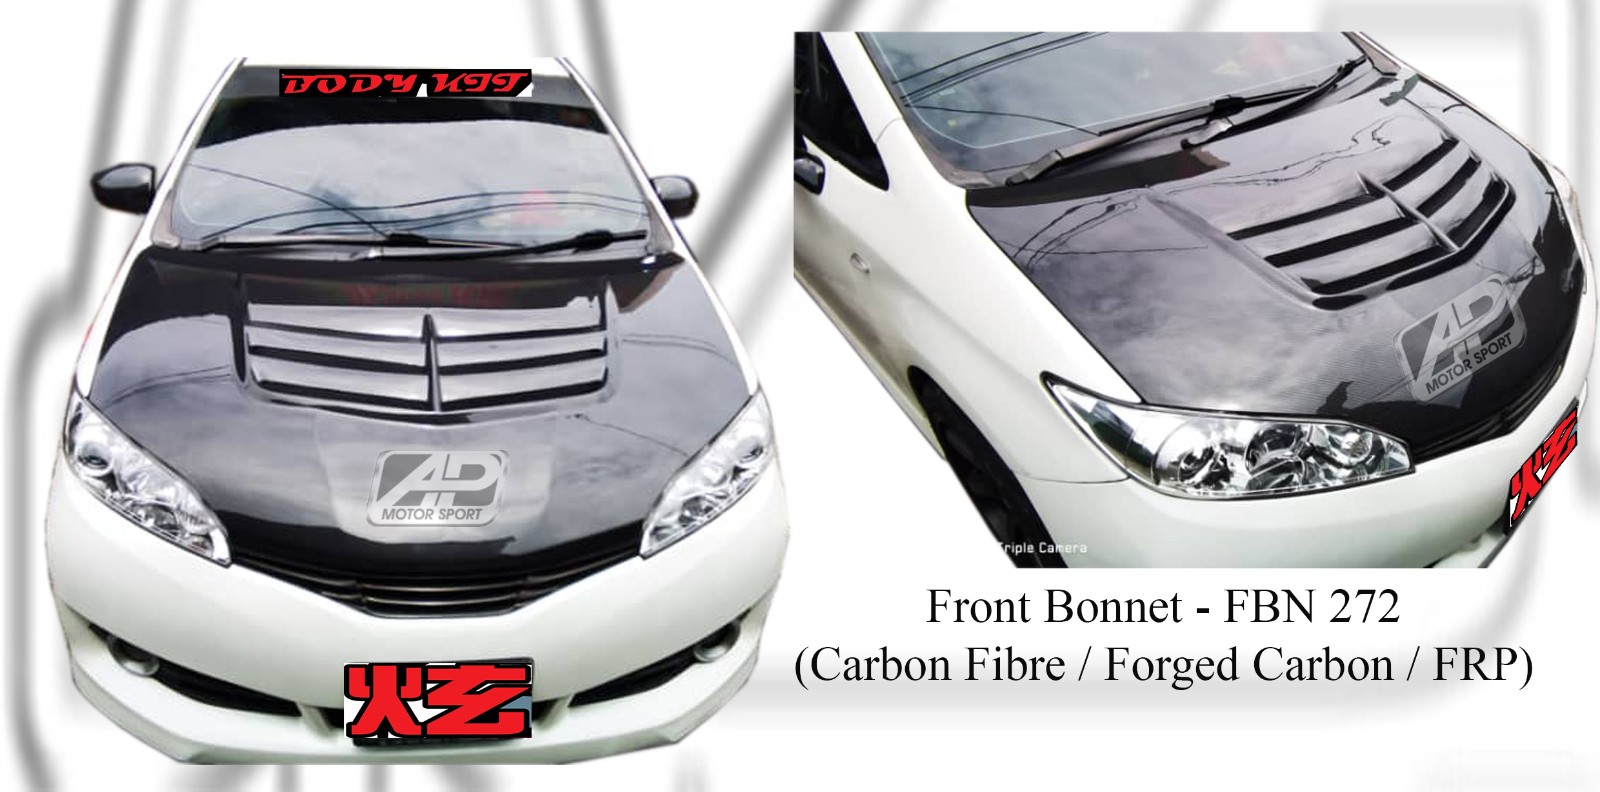 Toyota Wish 2009 Front Bonnet (Carbon Fibre / Forged Carbon 